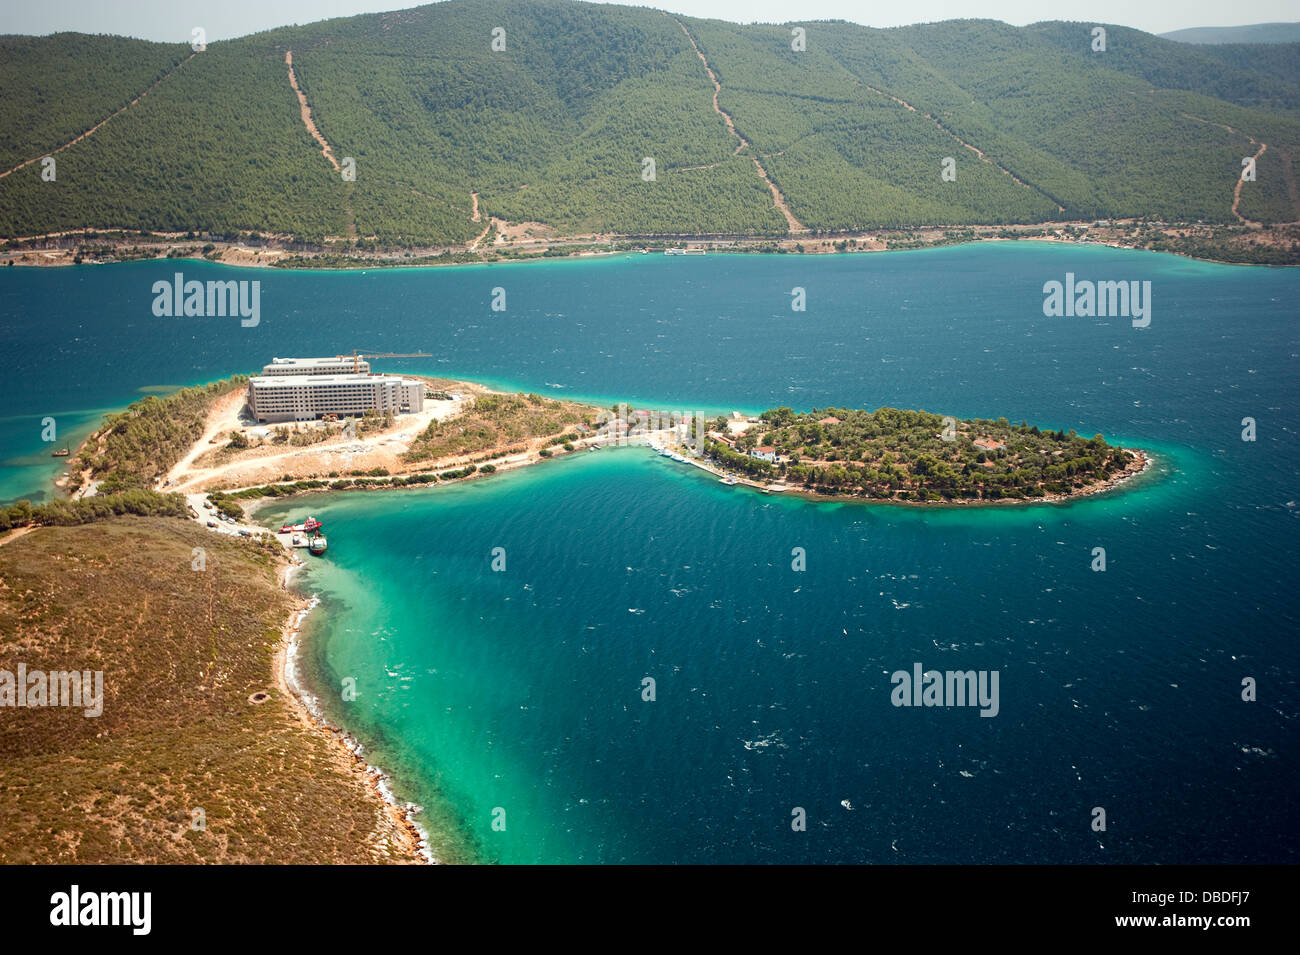 Vue aérienne de l'aménagement du littoral et de l'impact environnemental de la construction de l'hôtel à Güllük Bay Bodrum Turquie Banque D'Images